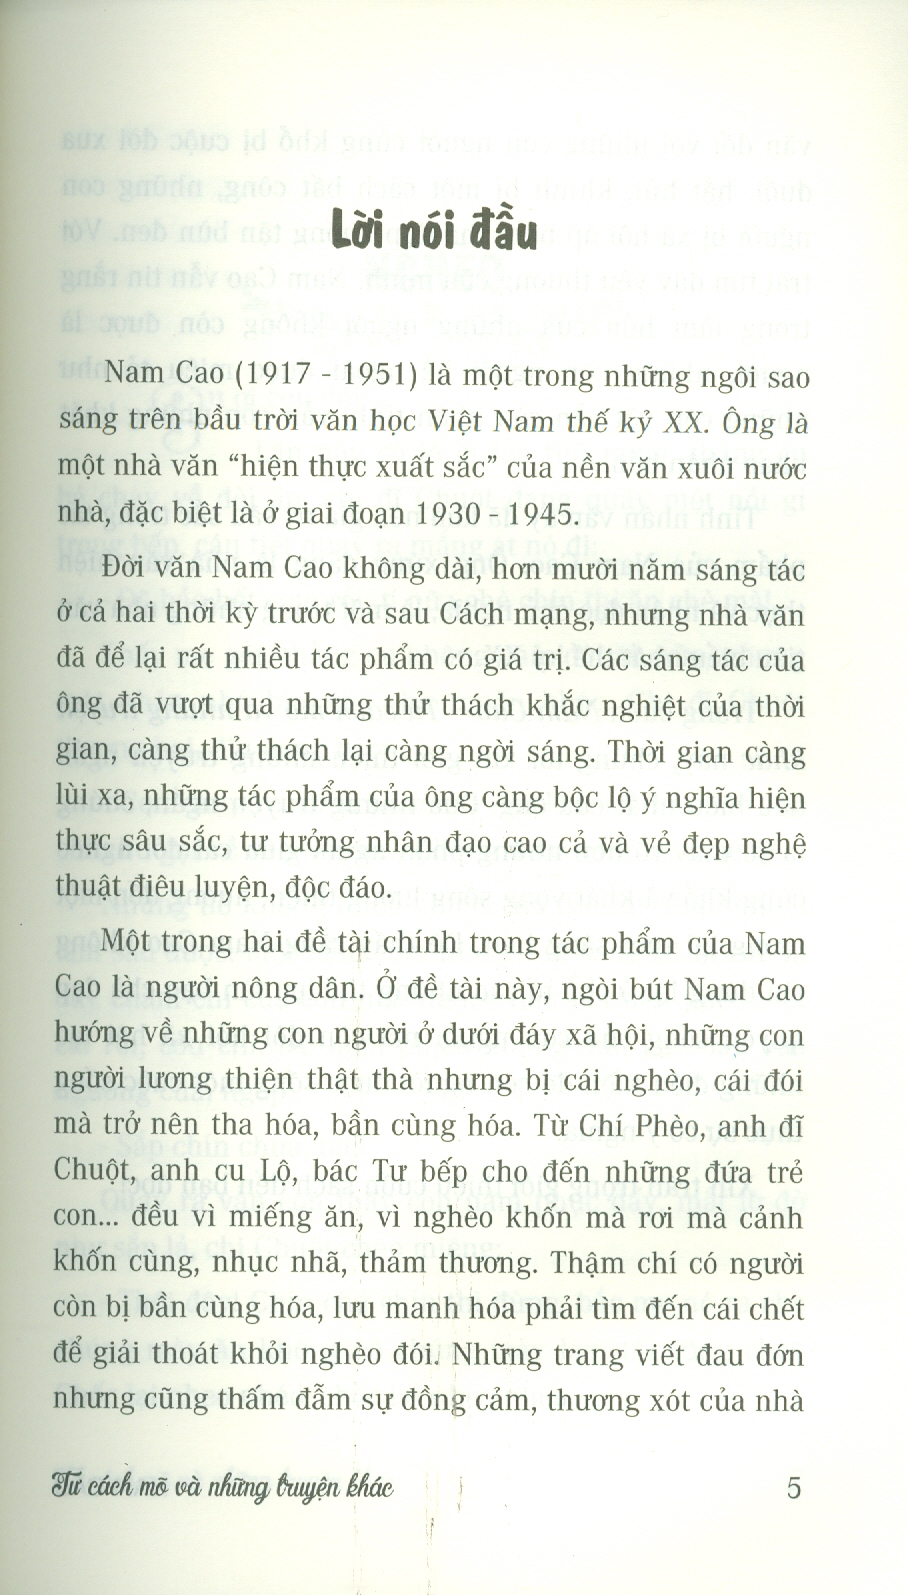 Nam Cao - Tư Cách Mõ Và Những Truyện Khác (Danh tác văn học Việt Nam)